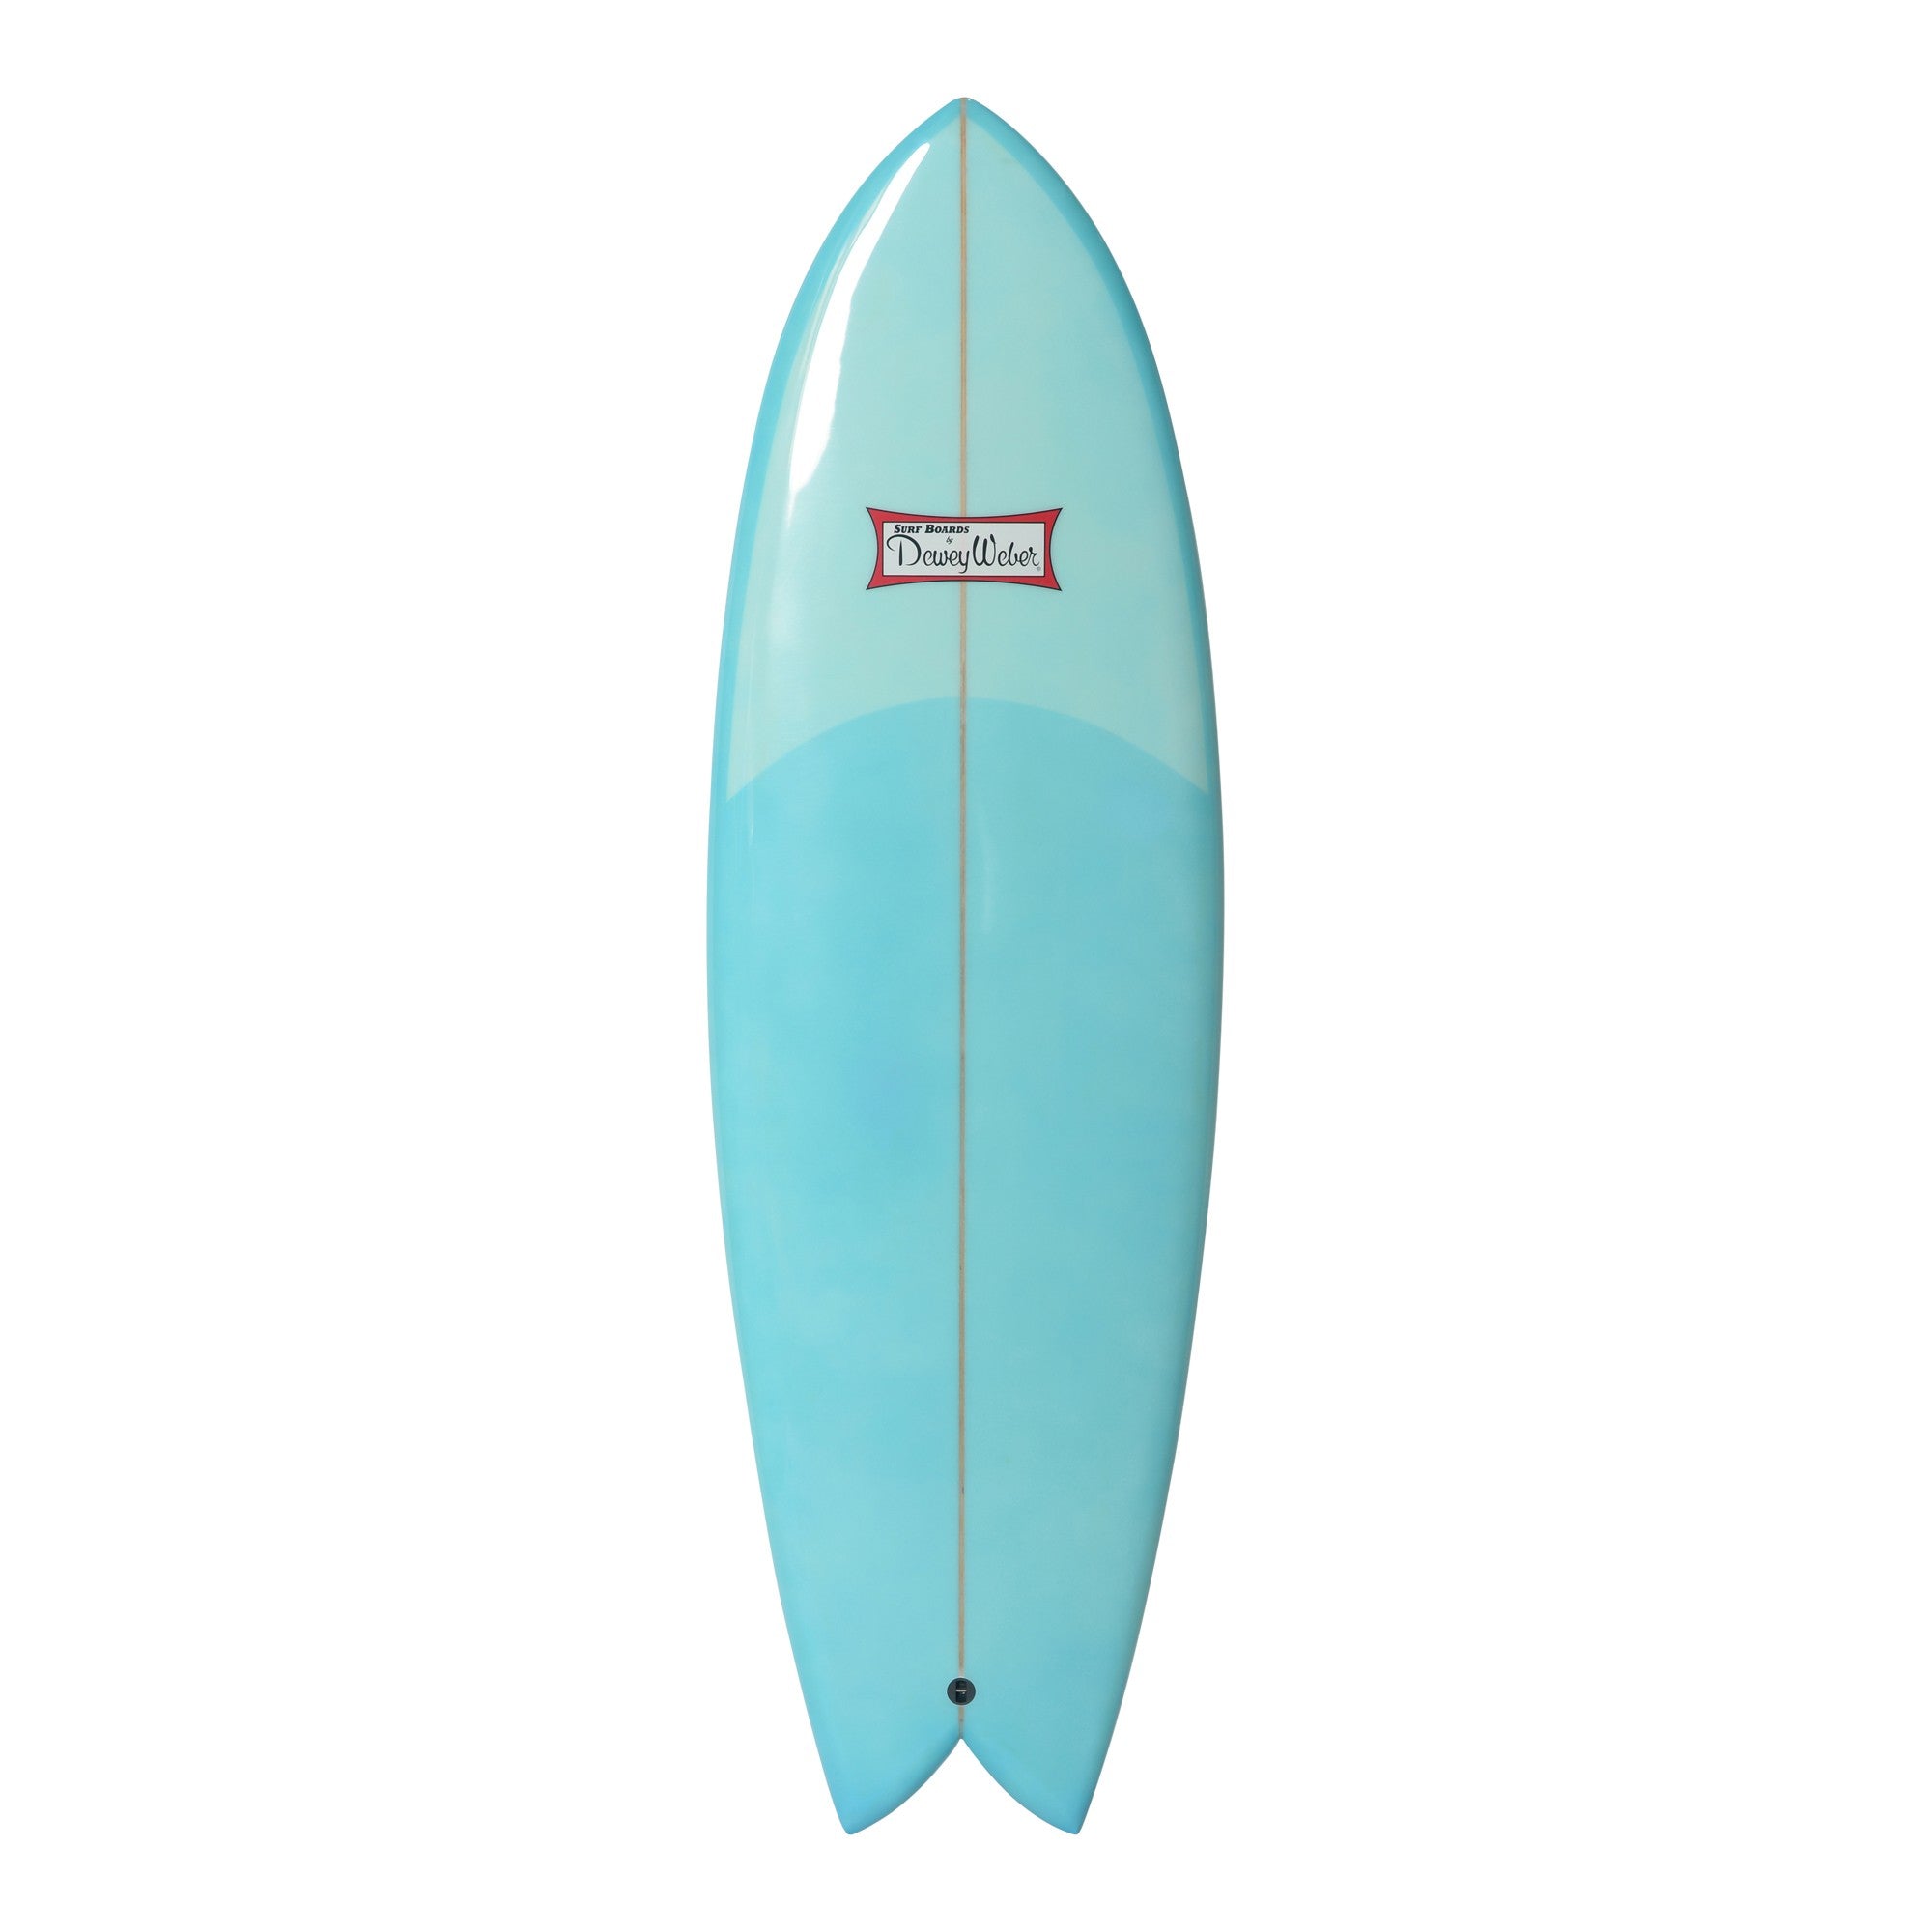 WEBER SURFBOARDS - Swish 6'0 - Blue